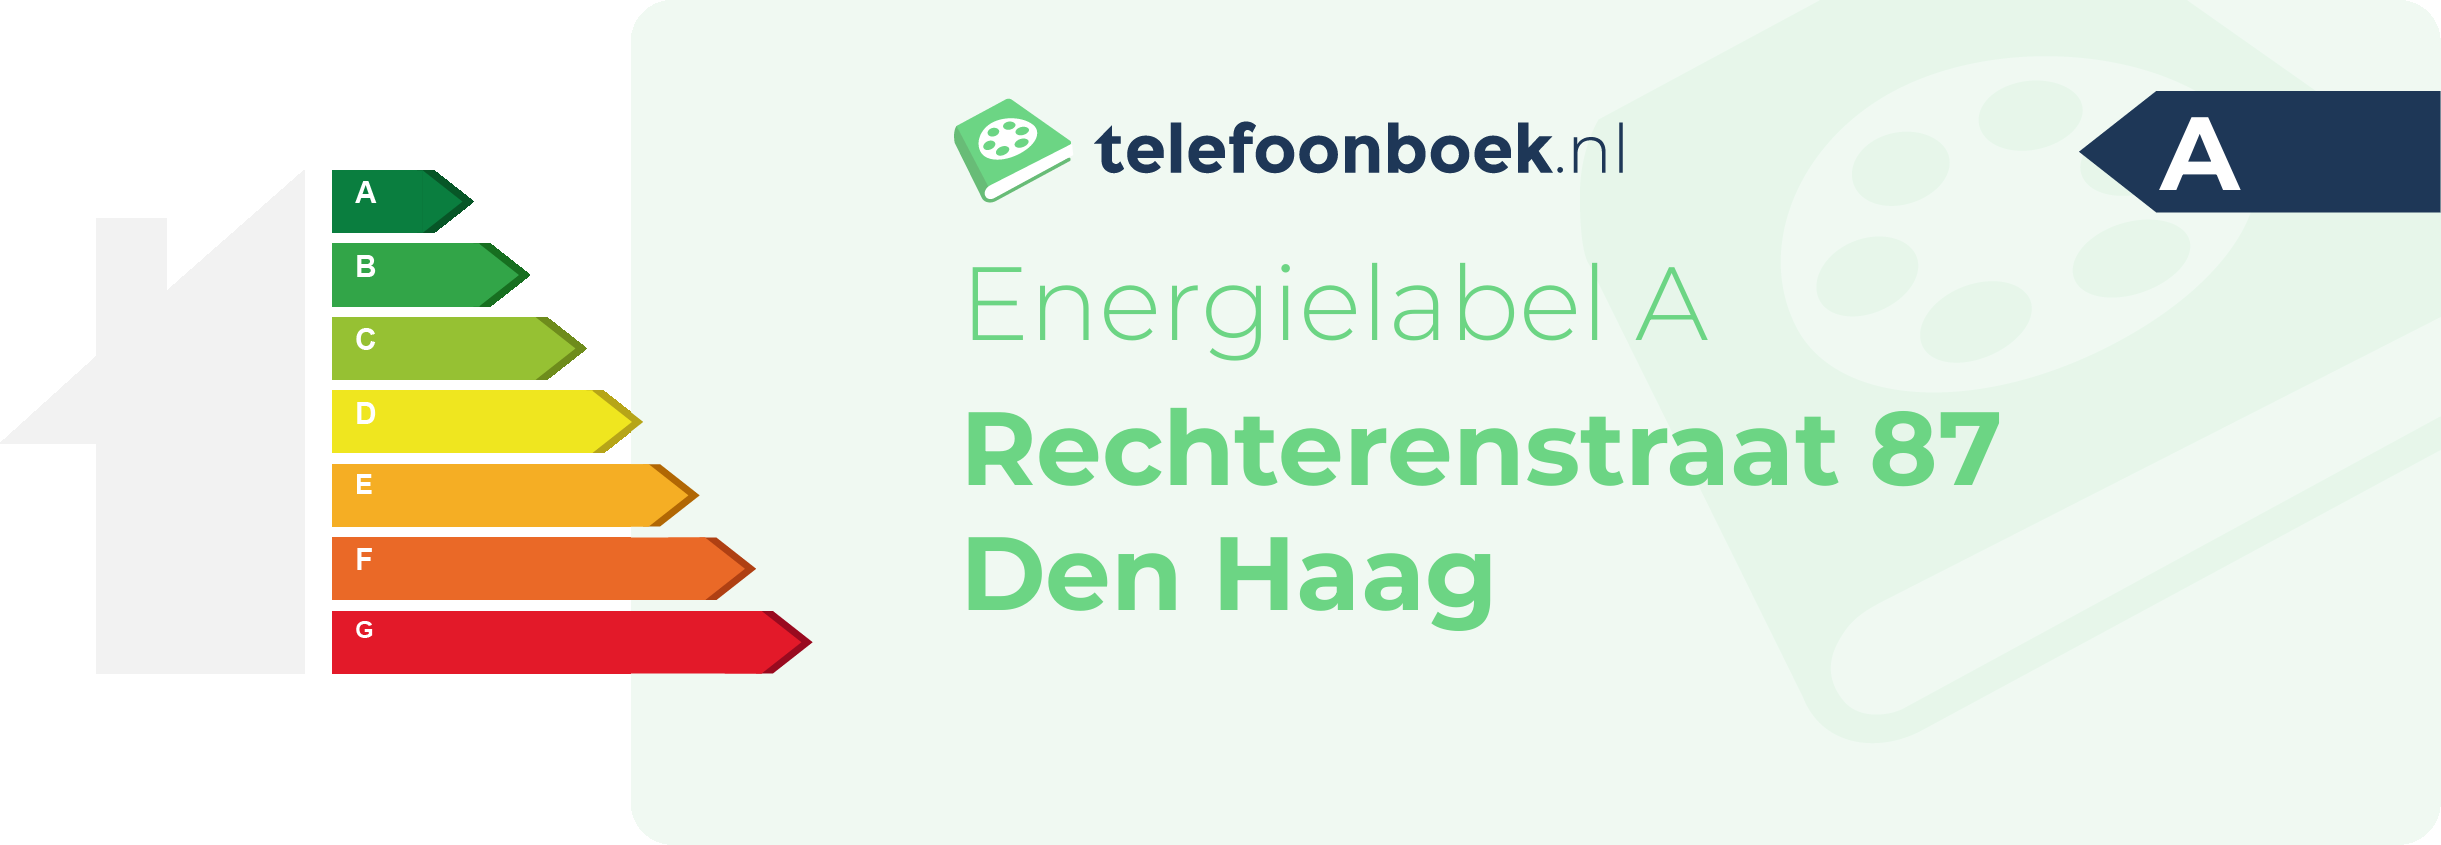 Energielabel Rechterenstraat 87 Den Haag